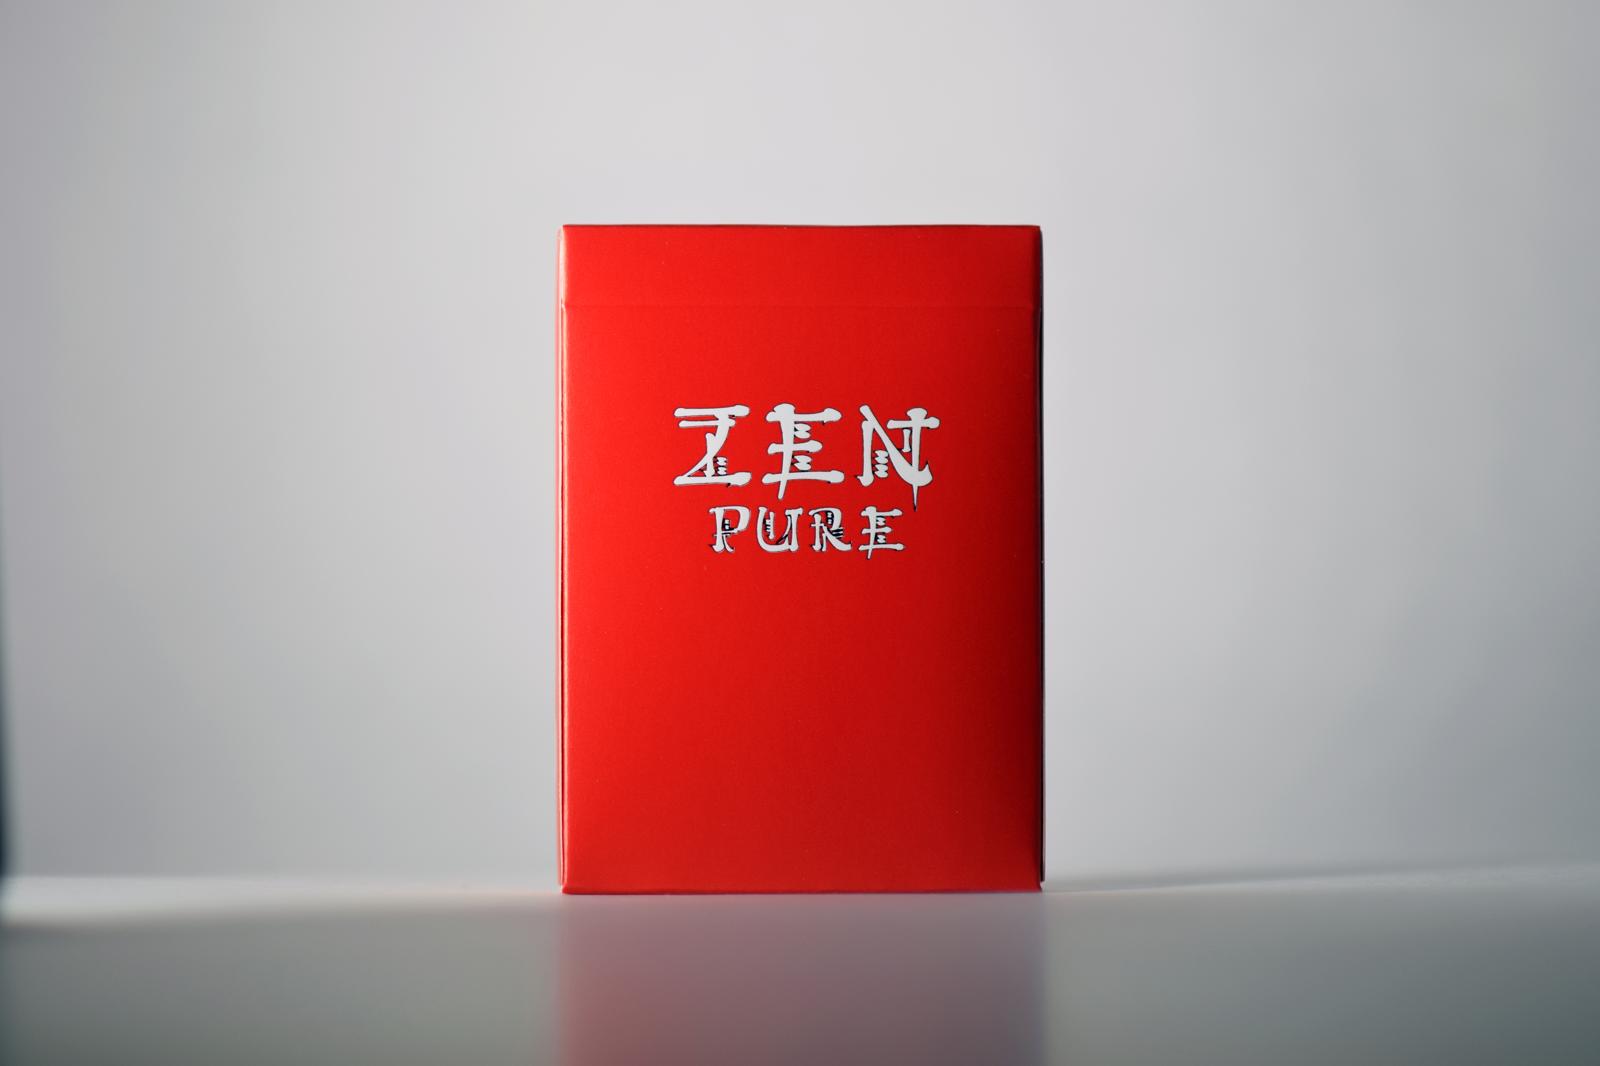 Zen Pure Red